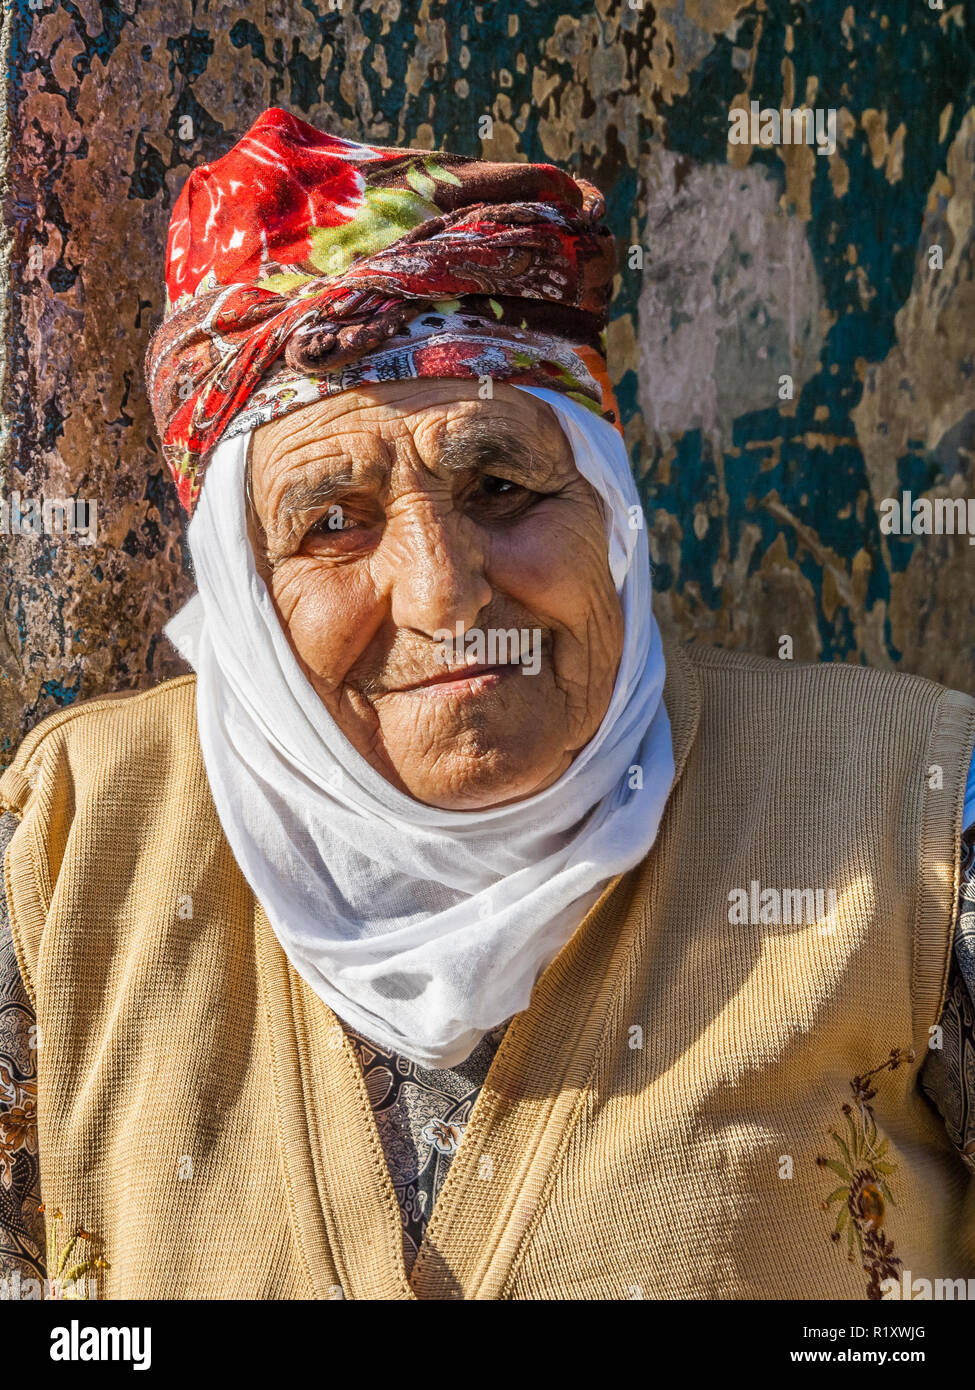 Istanbul, Türkei, November 9, 2012: Ältere türkische Dame mit der traditionellen Kopfbedeckung. Stockfoto